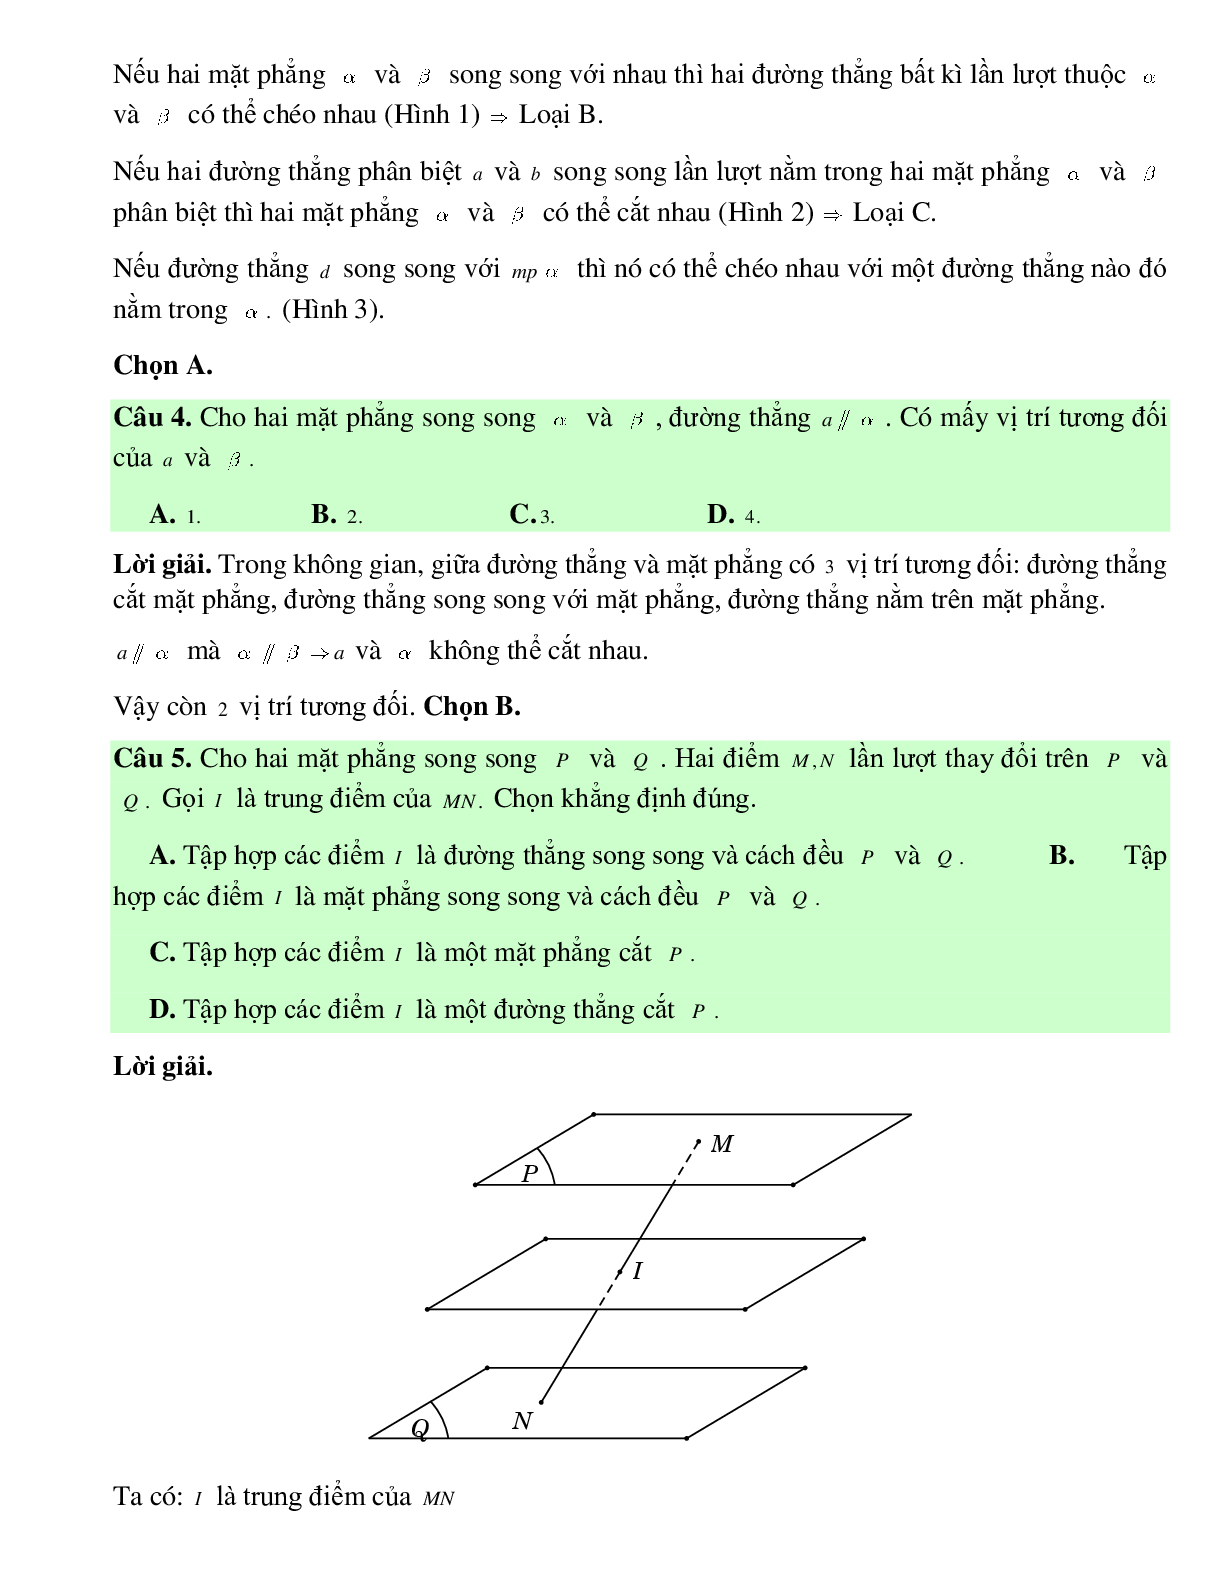 Bài tập Toán hình 11 Bài 4 có đáp án: Hai mặt phẳng song song (trang 9)